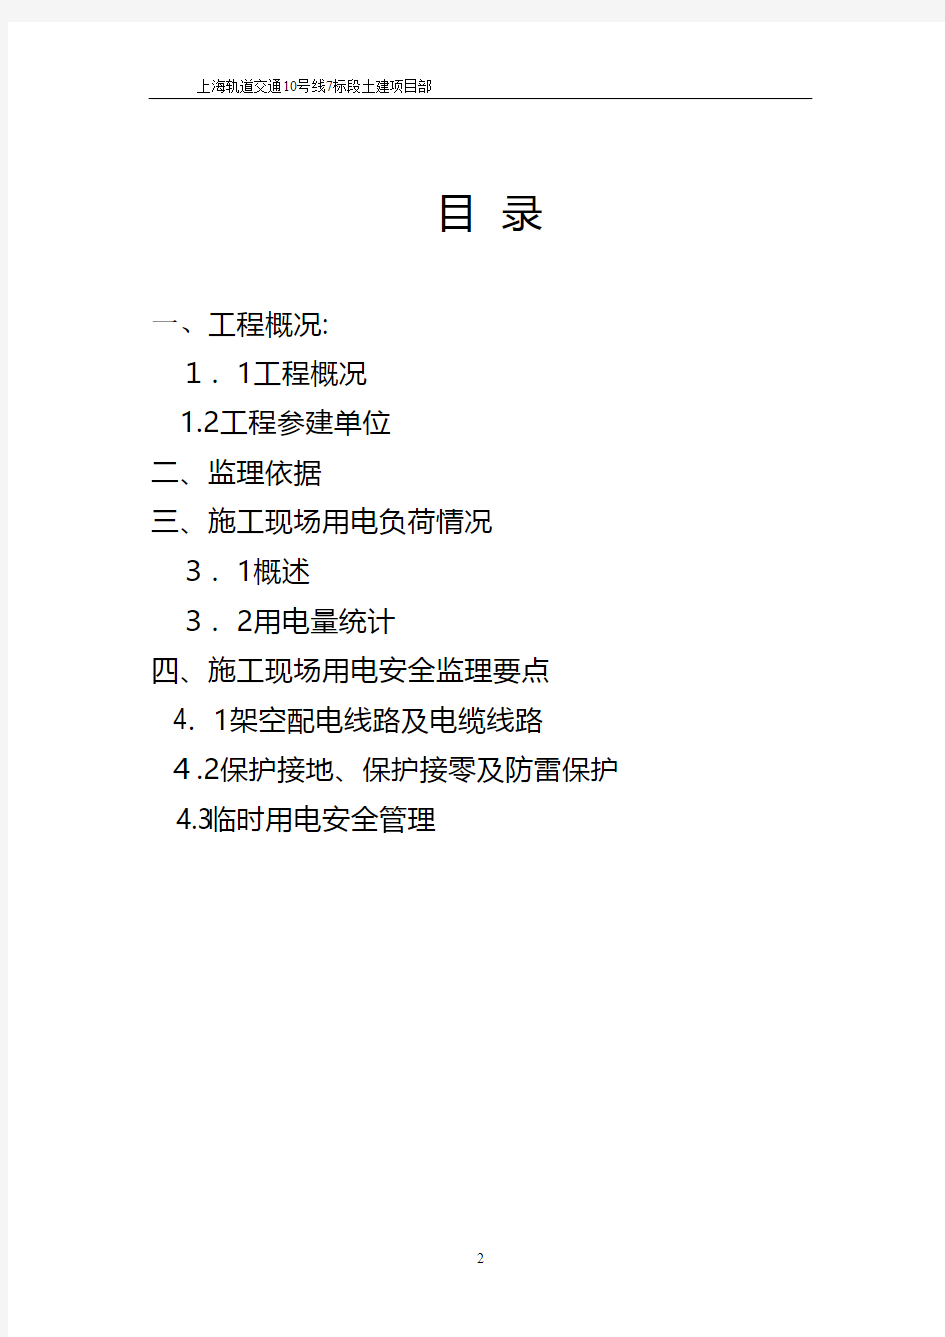 上海轨道交通土建工程临时用电安全监理细则 2